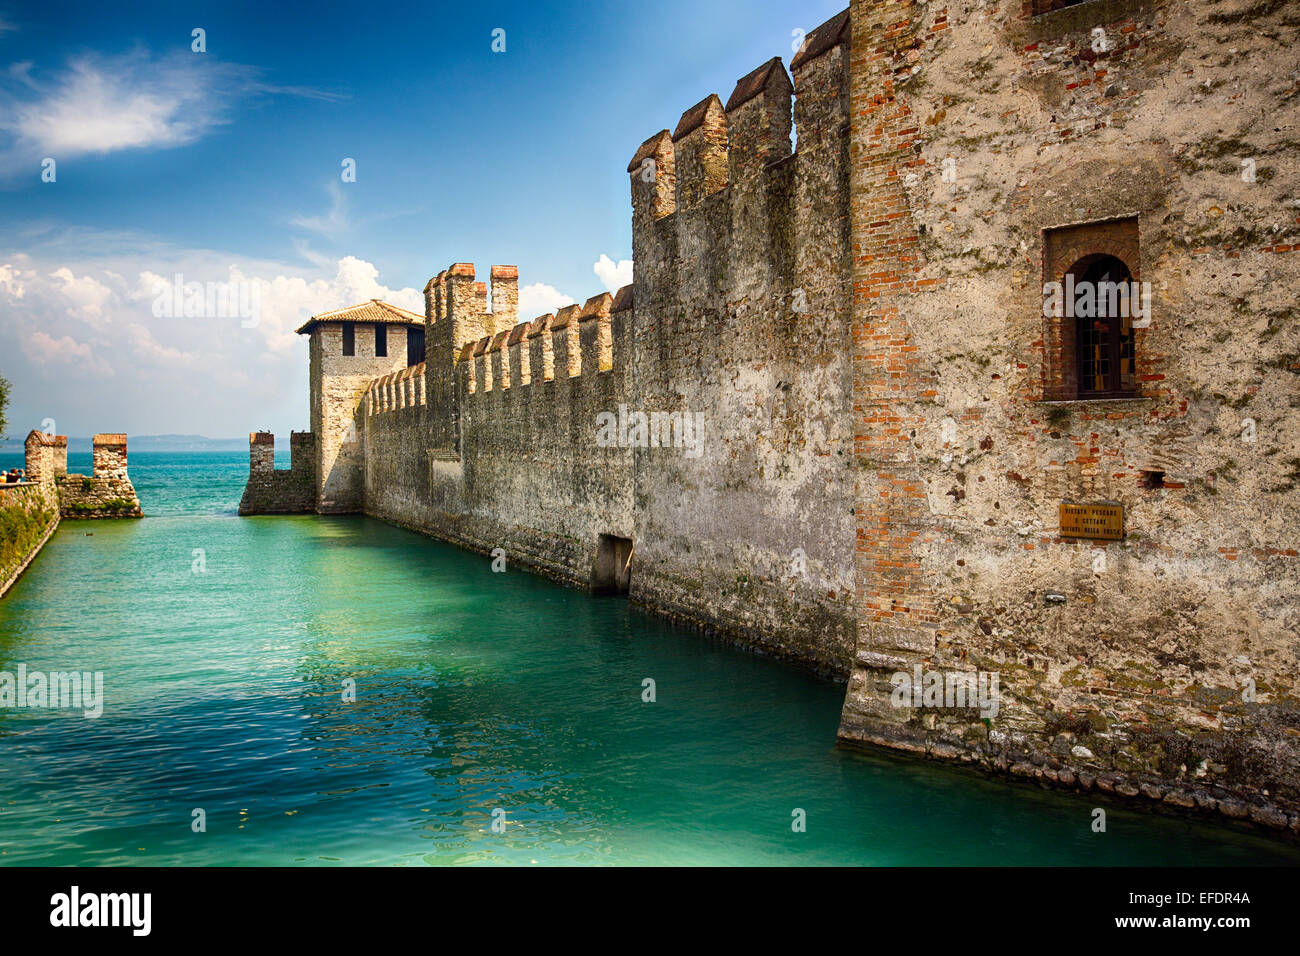 Vista di un castello nel lago, Castello Scaligero, Sirmione sul Lago di  Garda, Lombardia, Italia Foto stock - Alamy